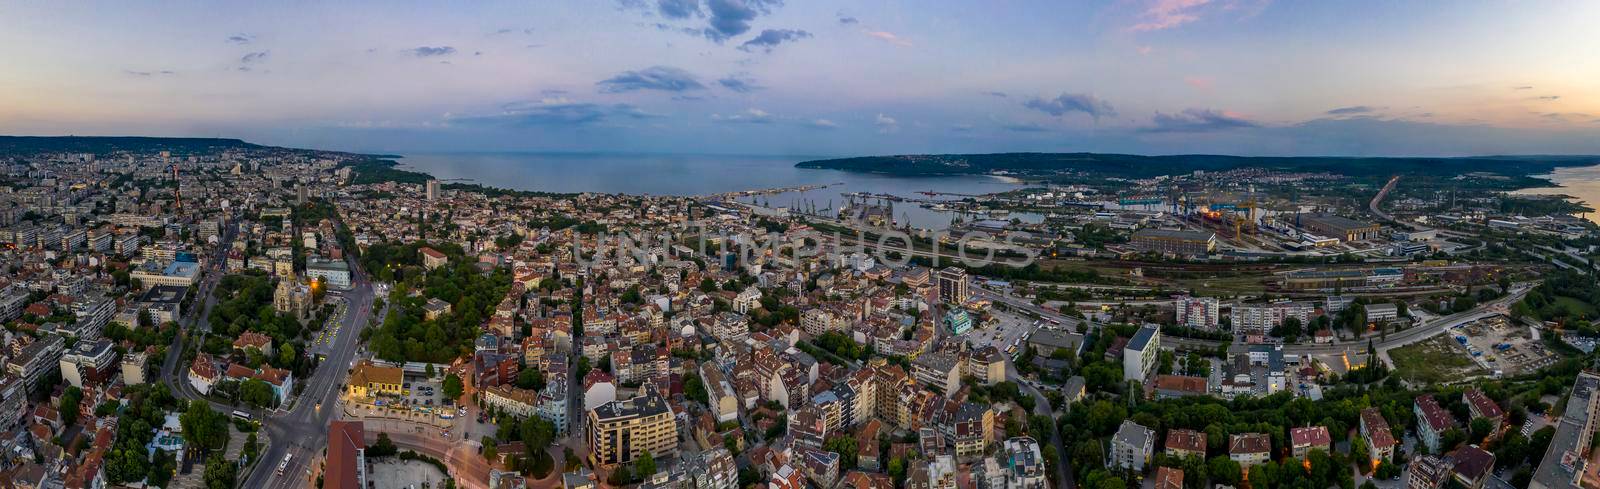 Varna, Bulgaria - May 30, 2019: Amazing detail aerial panorama of Varna city, bay and lake at sunset